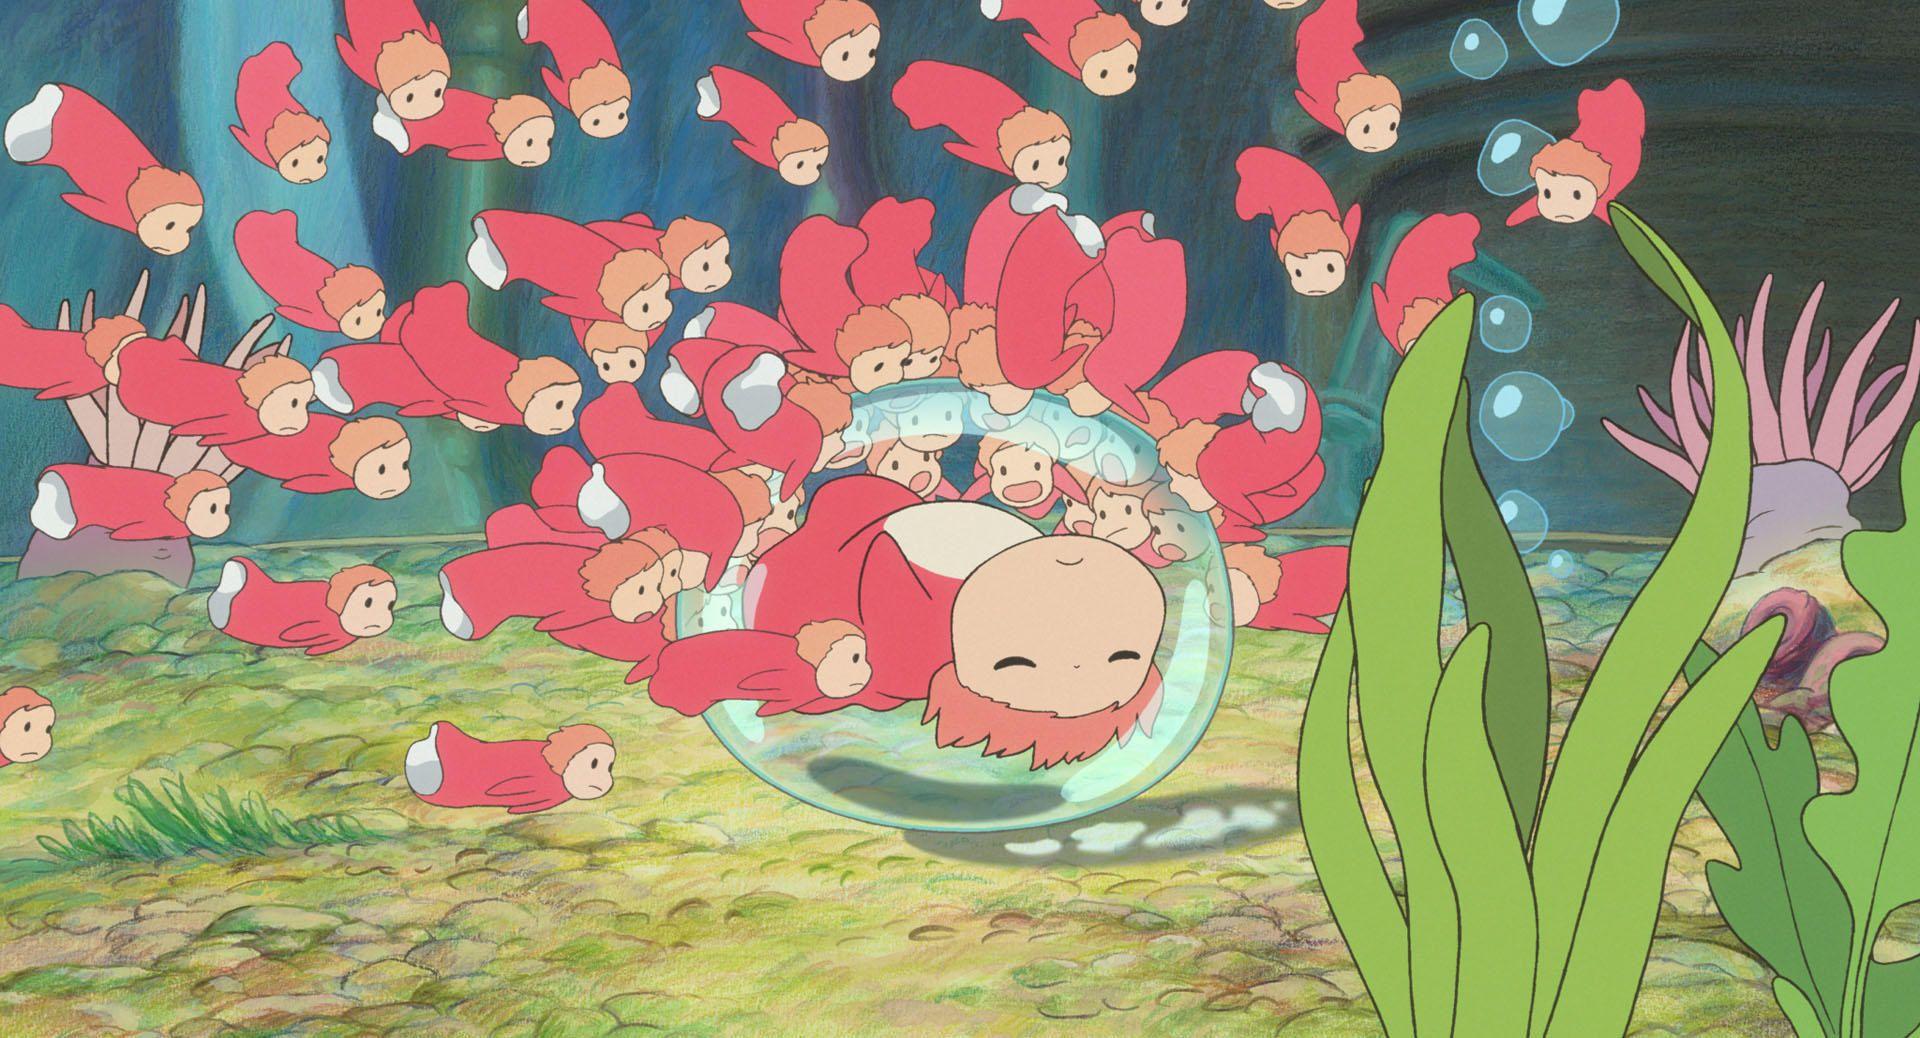 宫崎骏动漫电影《悬崖上的金鱼姬》电脑壁纸 